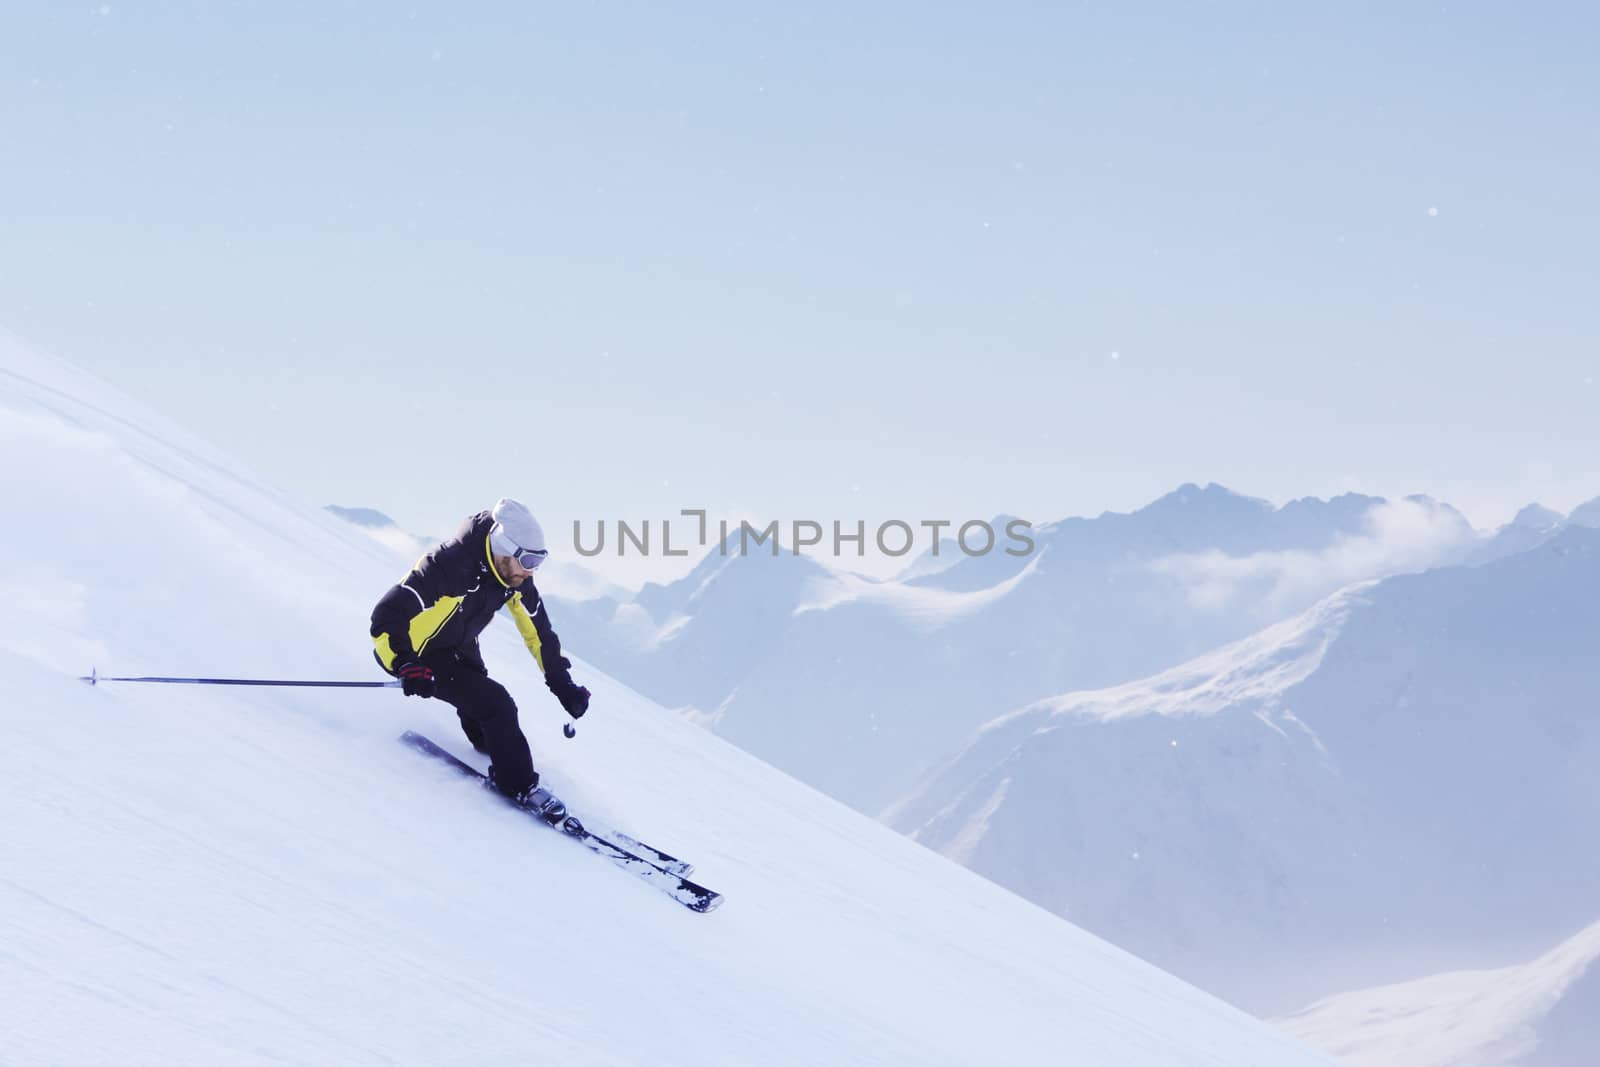 Skier in high mountains by destillat